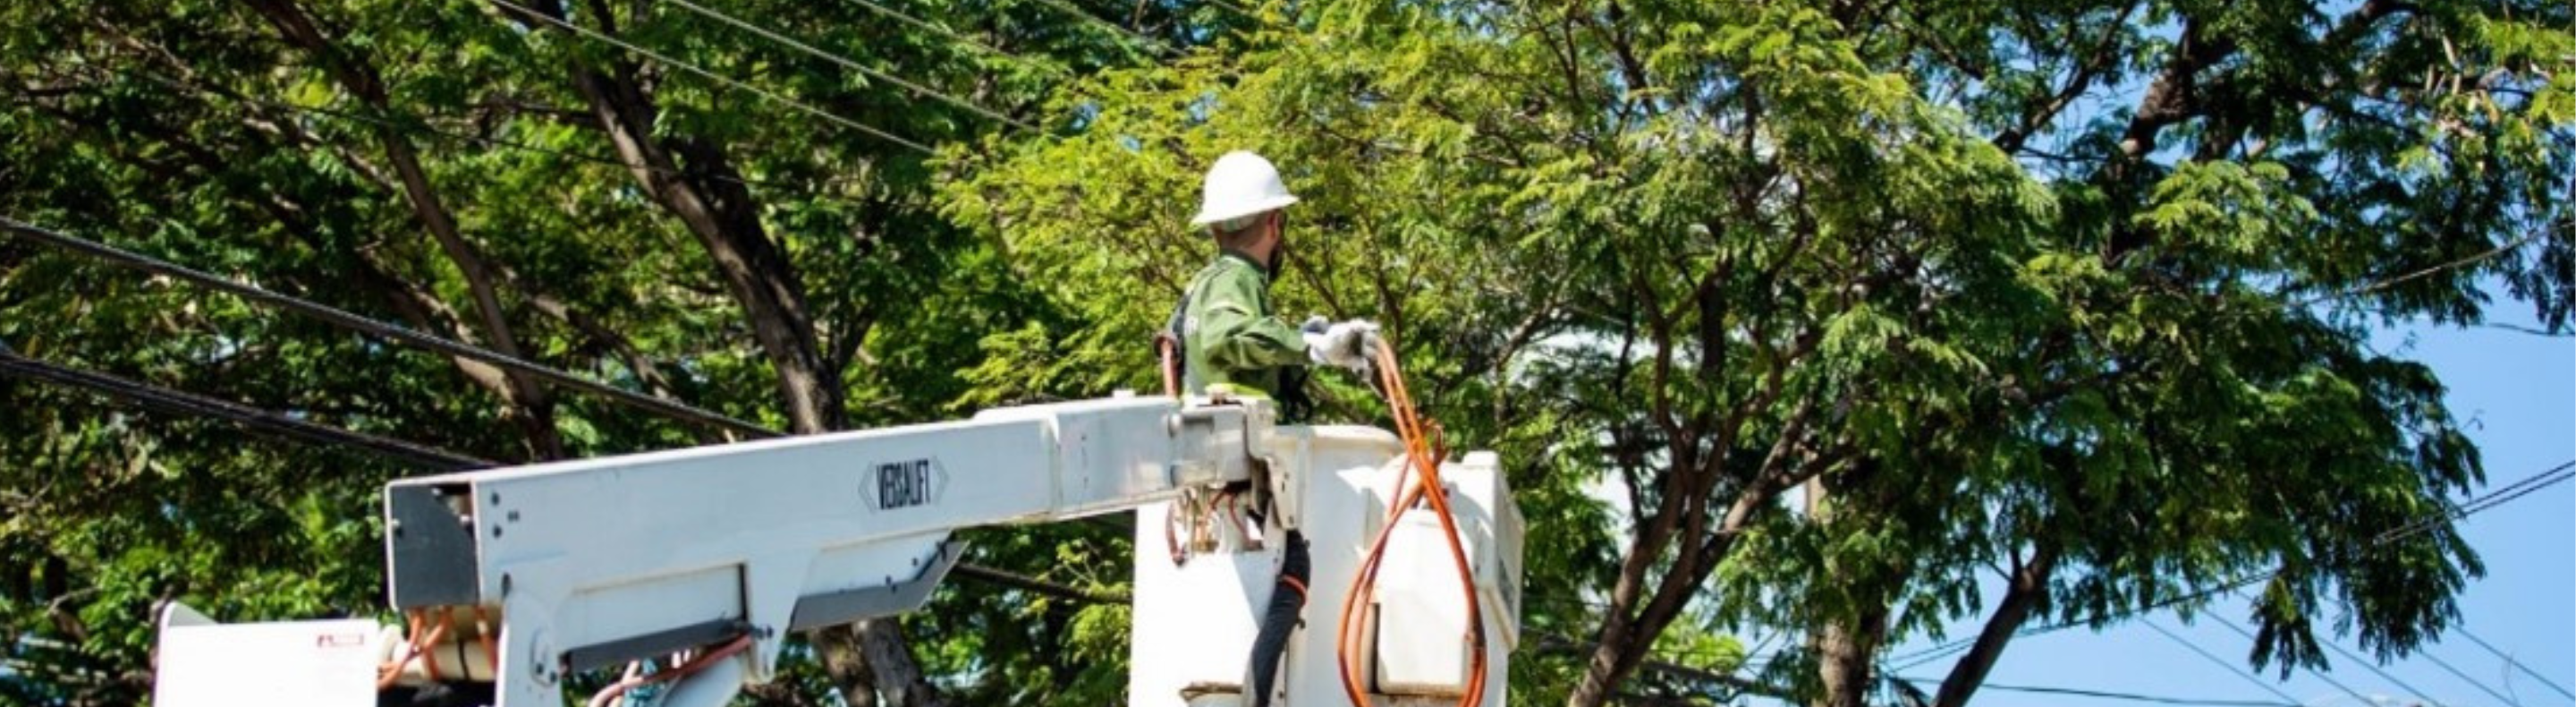 Imagem mostra eletricista da Neoenergia realizando poda preventiva em árvore